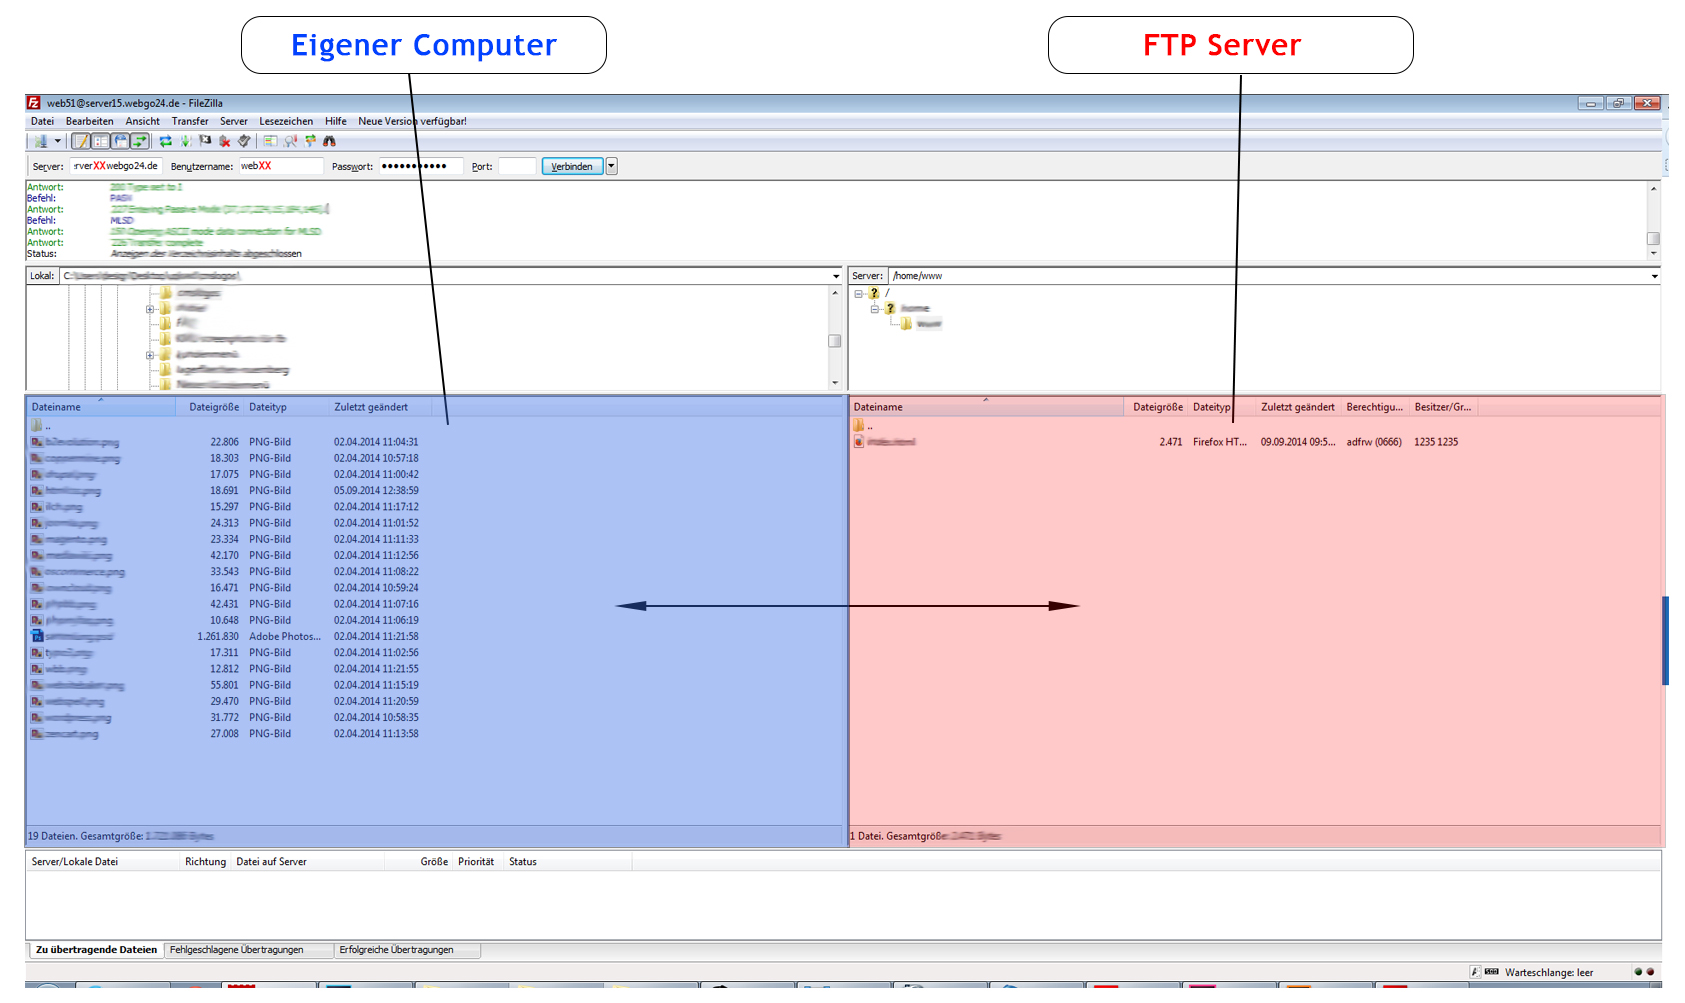 Eigener Compuer - FTP Server